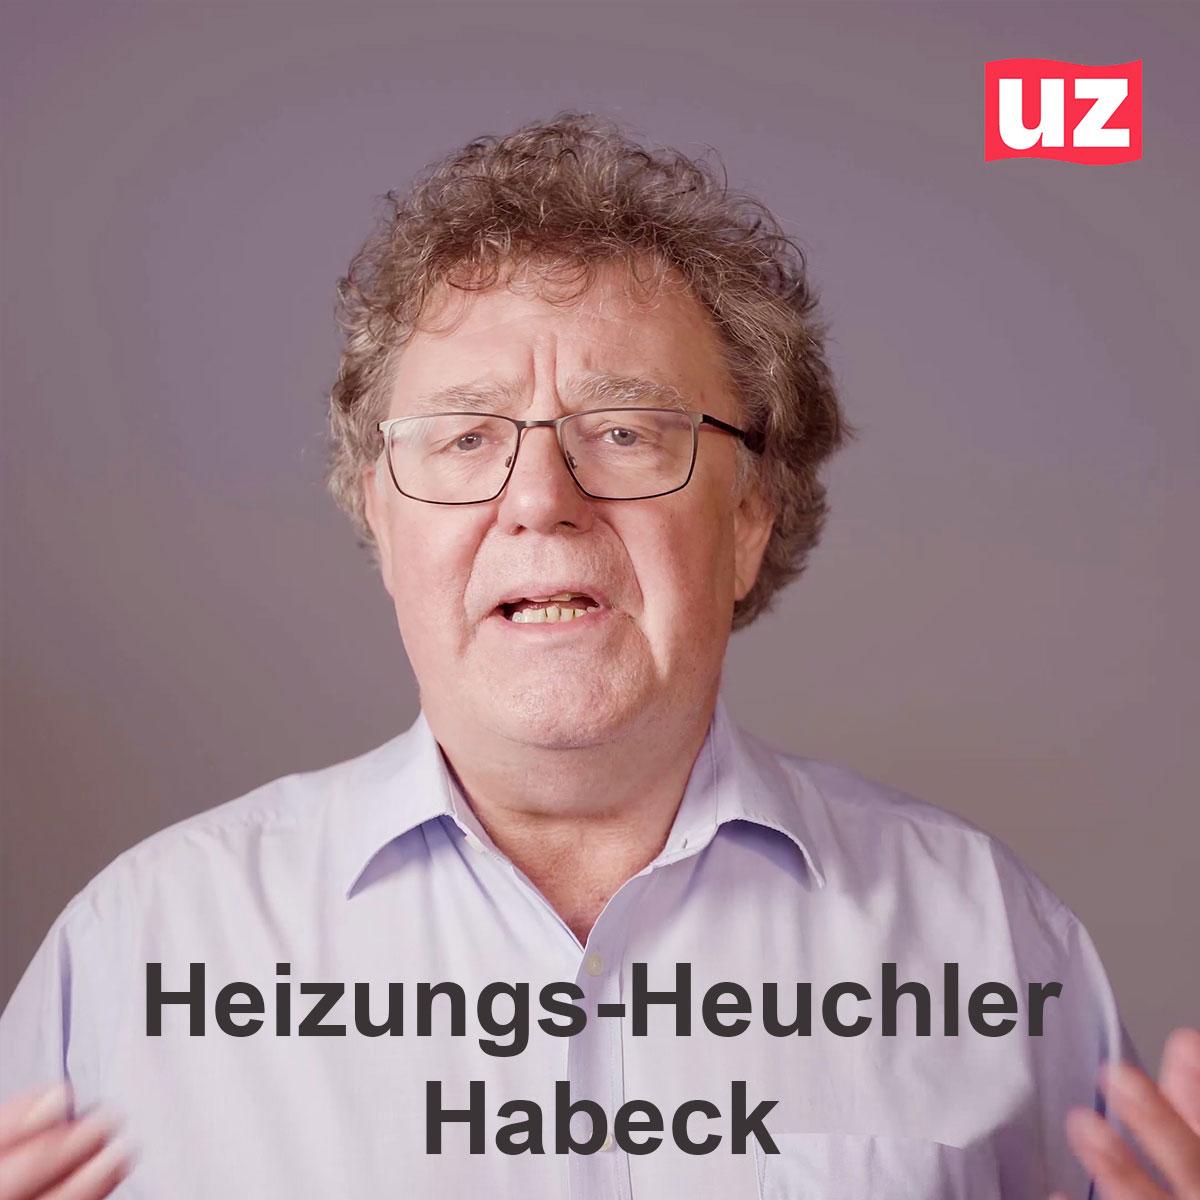 Habeck Heizung thumbnail - Heizungsheuchler Habeck - Heizung, Patrik Köbele, Robert Habeck - Blog, DKP in Aktion